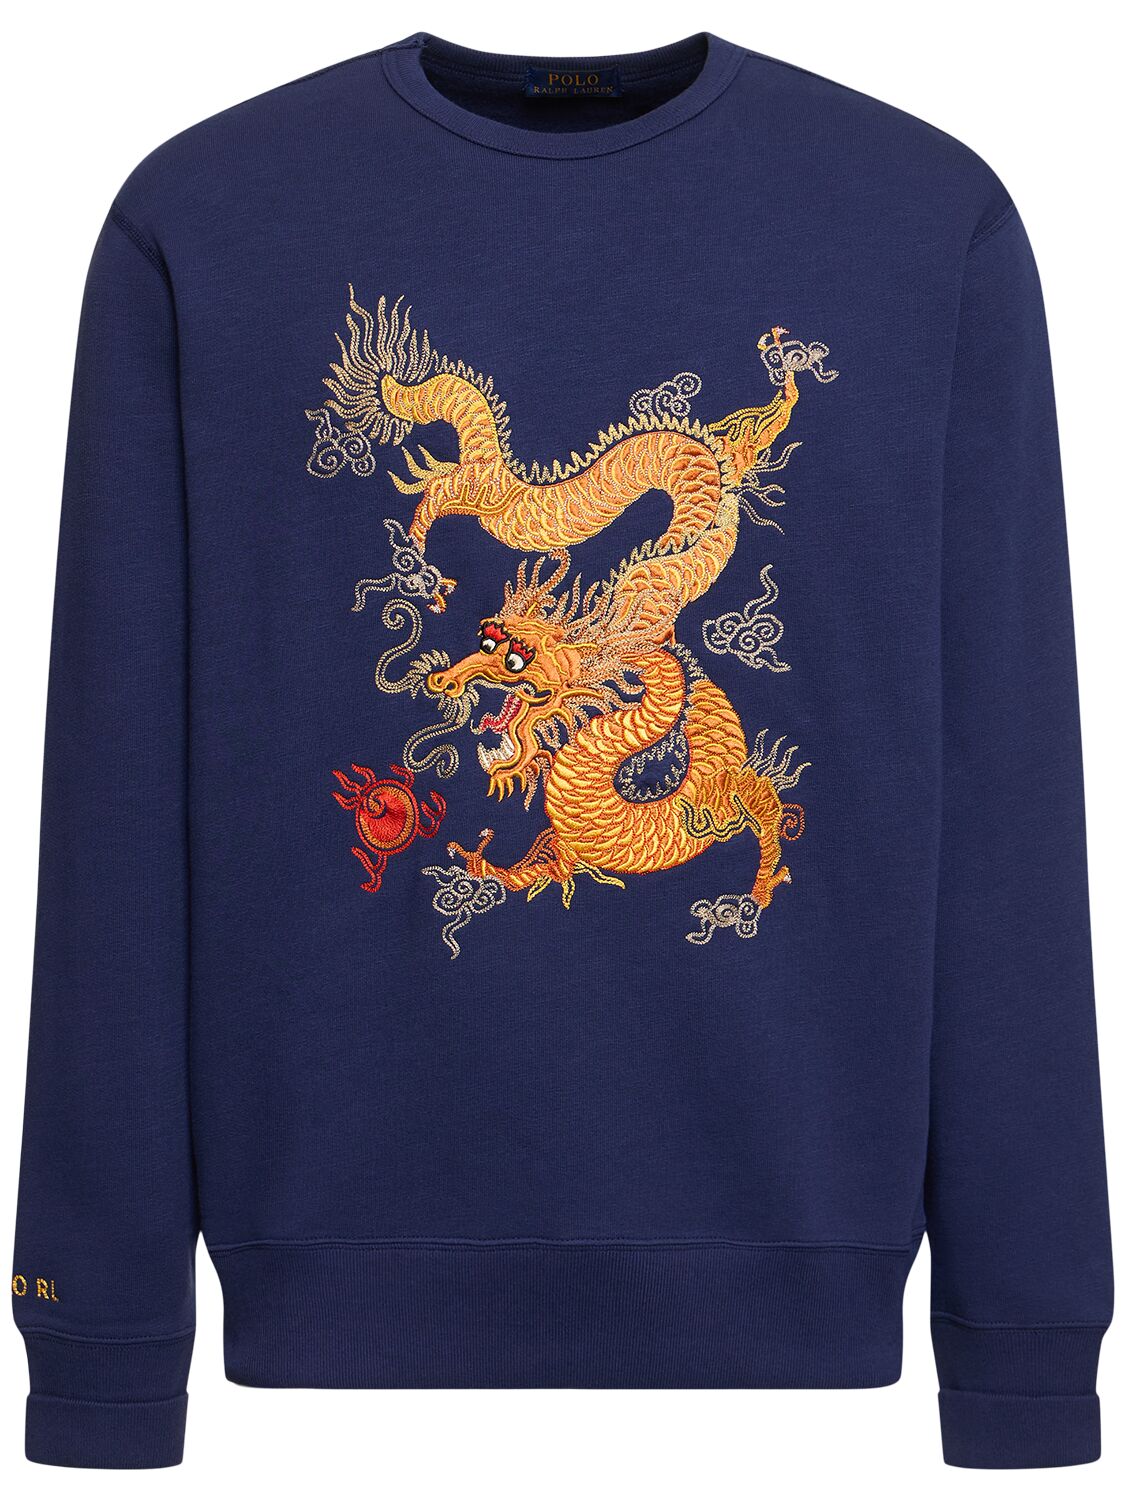 Image of Dragon Embroidery Sweatshirt